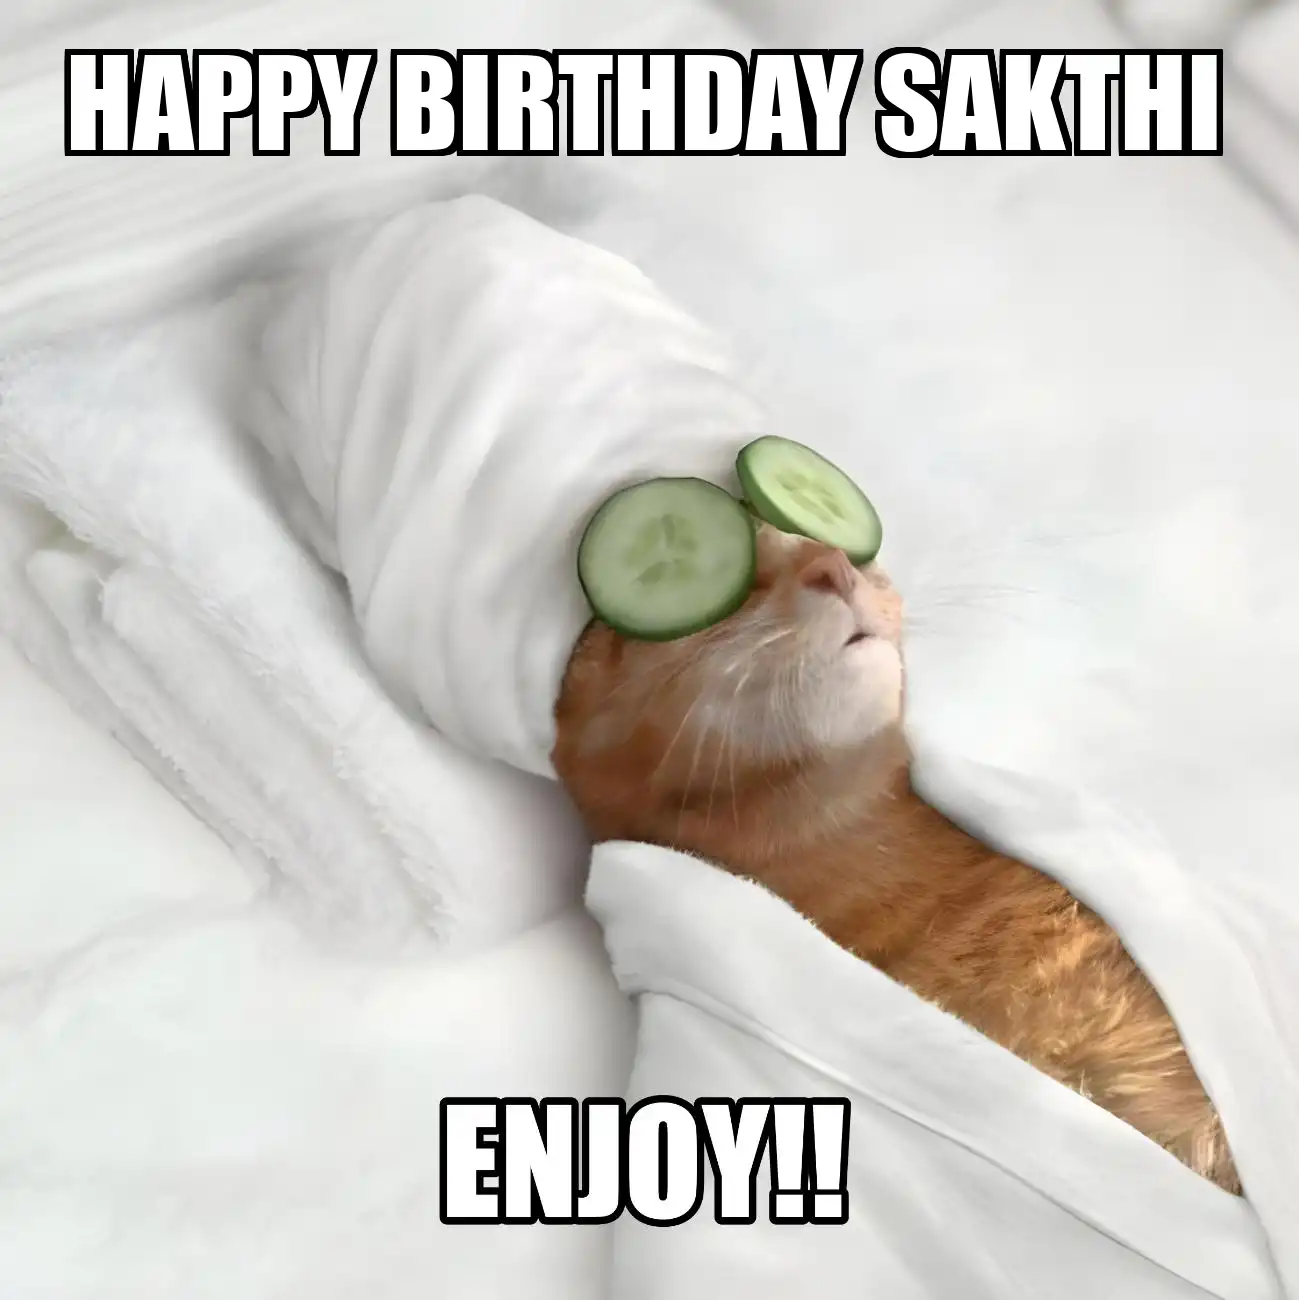 Happy Birthday Sakthi Enjoy Cat Meme